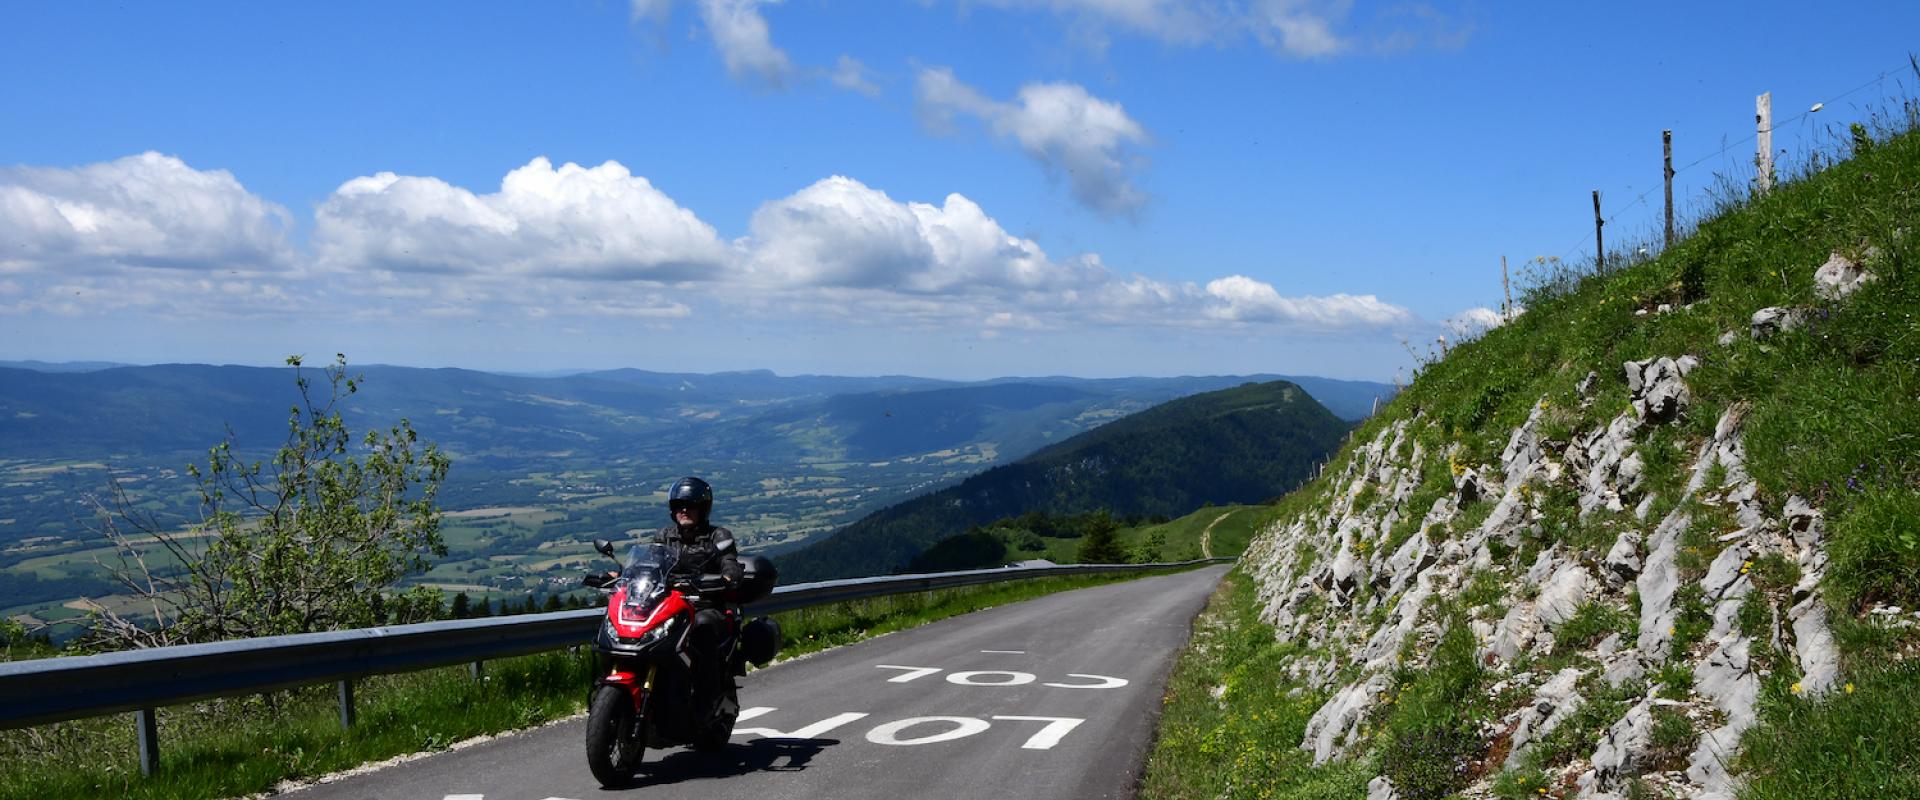 Motorradfahrer unterwegs auf Slowenische Grenzkammstraße, mit schönem Panorama